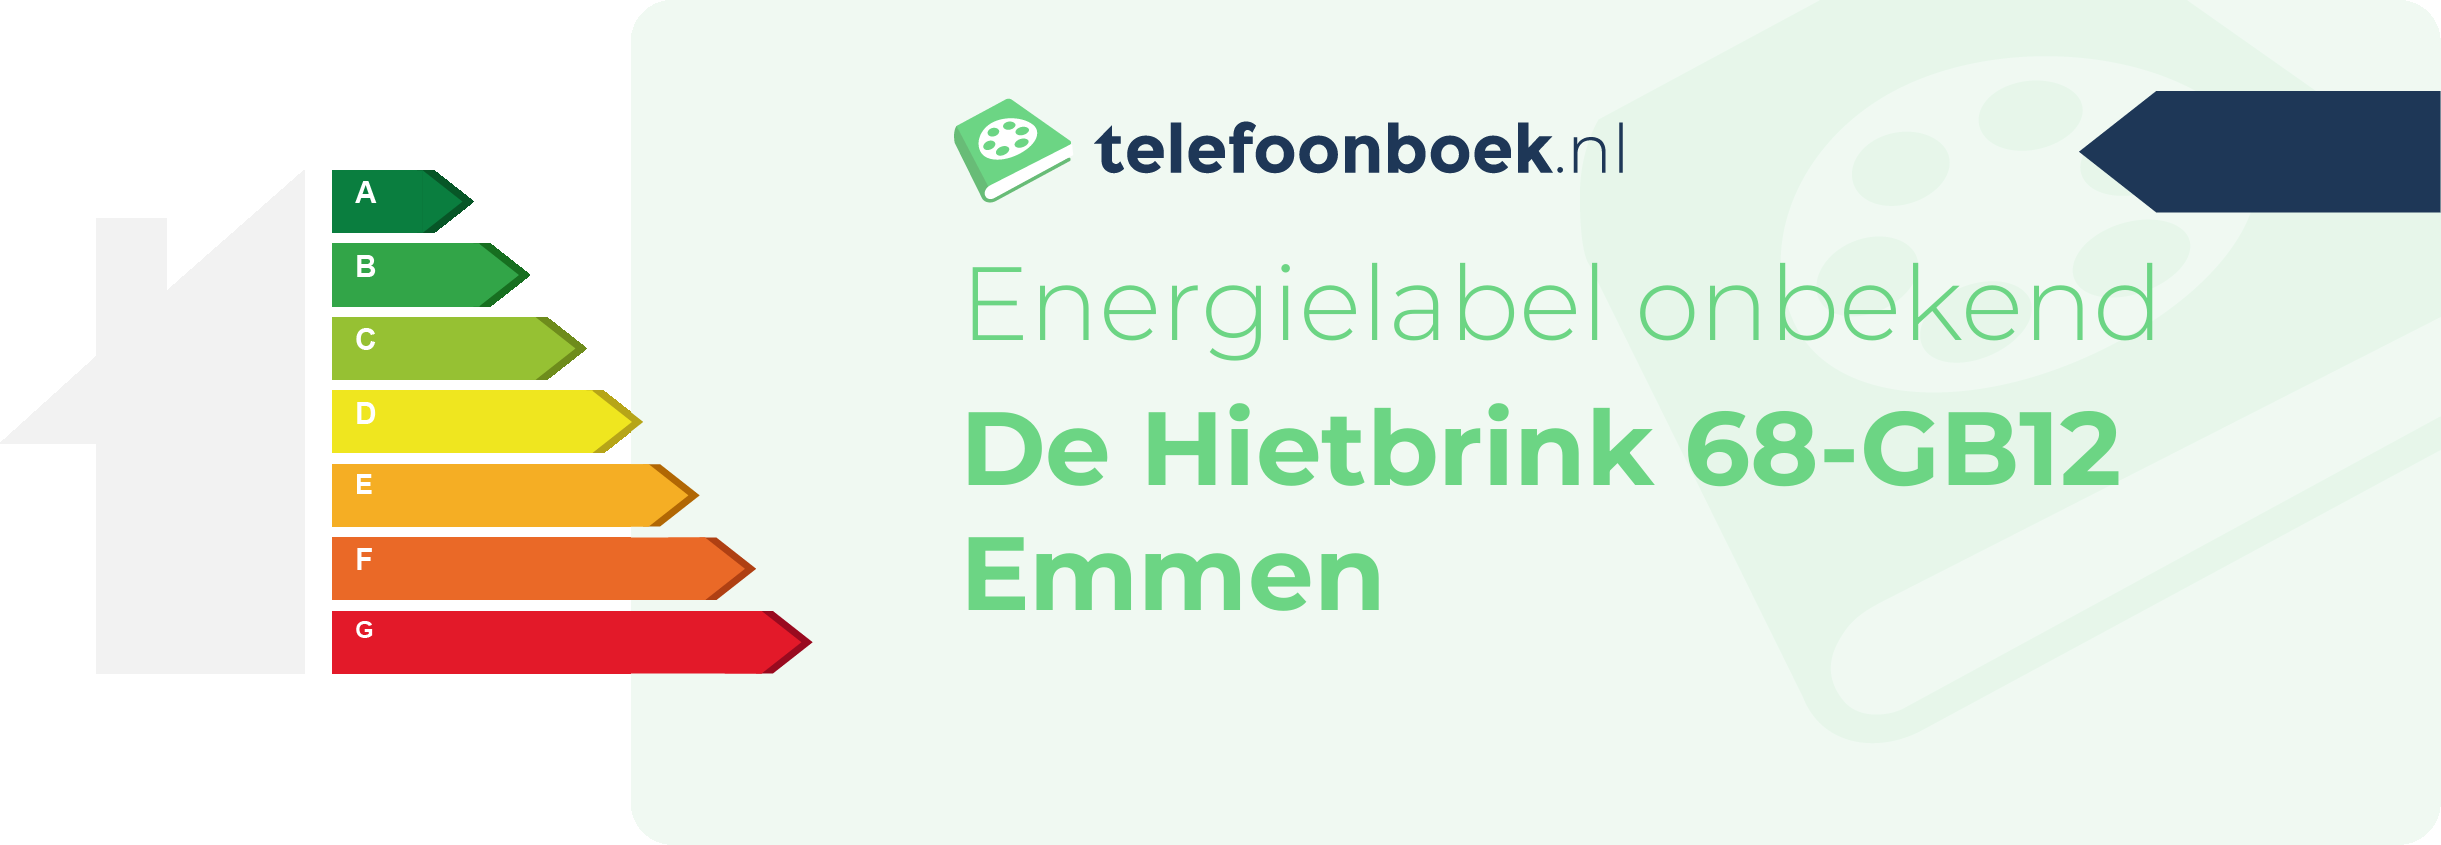 Energielabel De Hietbrink 68-GB12 Emmen